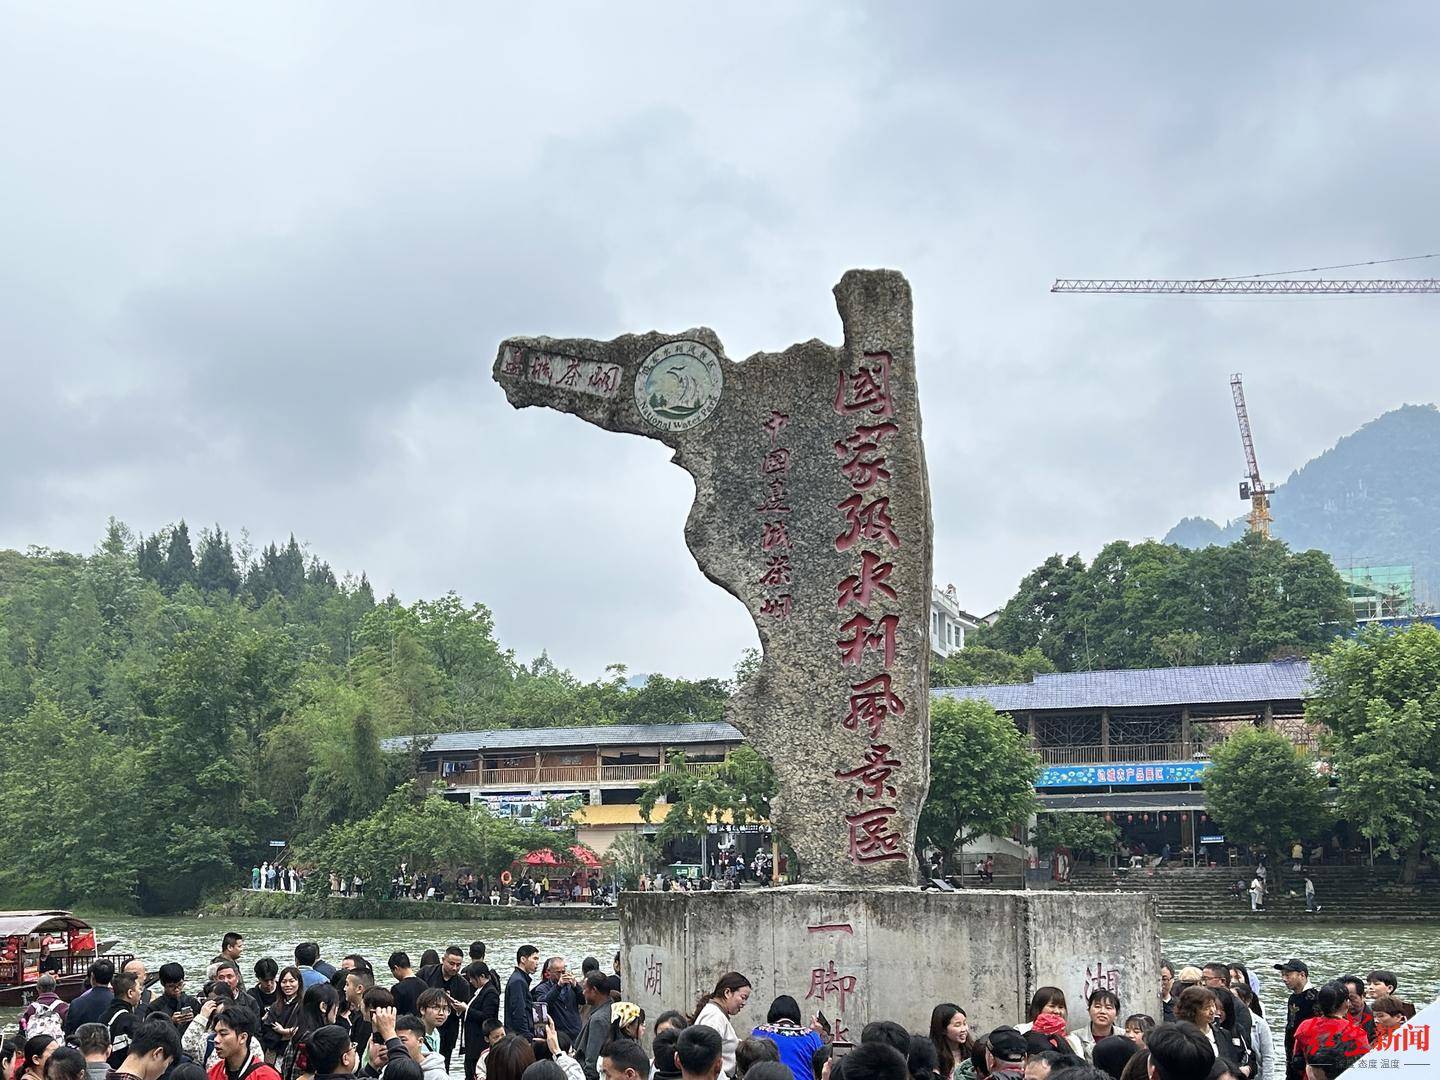 重庆5a景区名单2021年图片